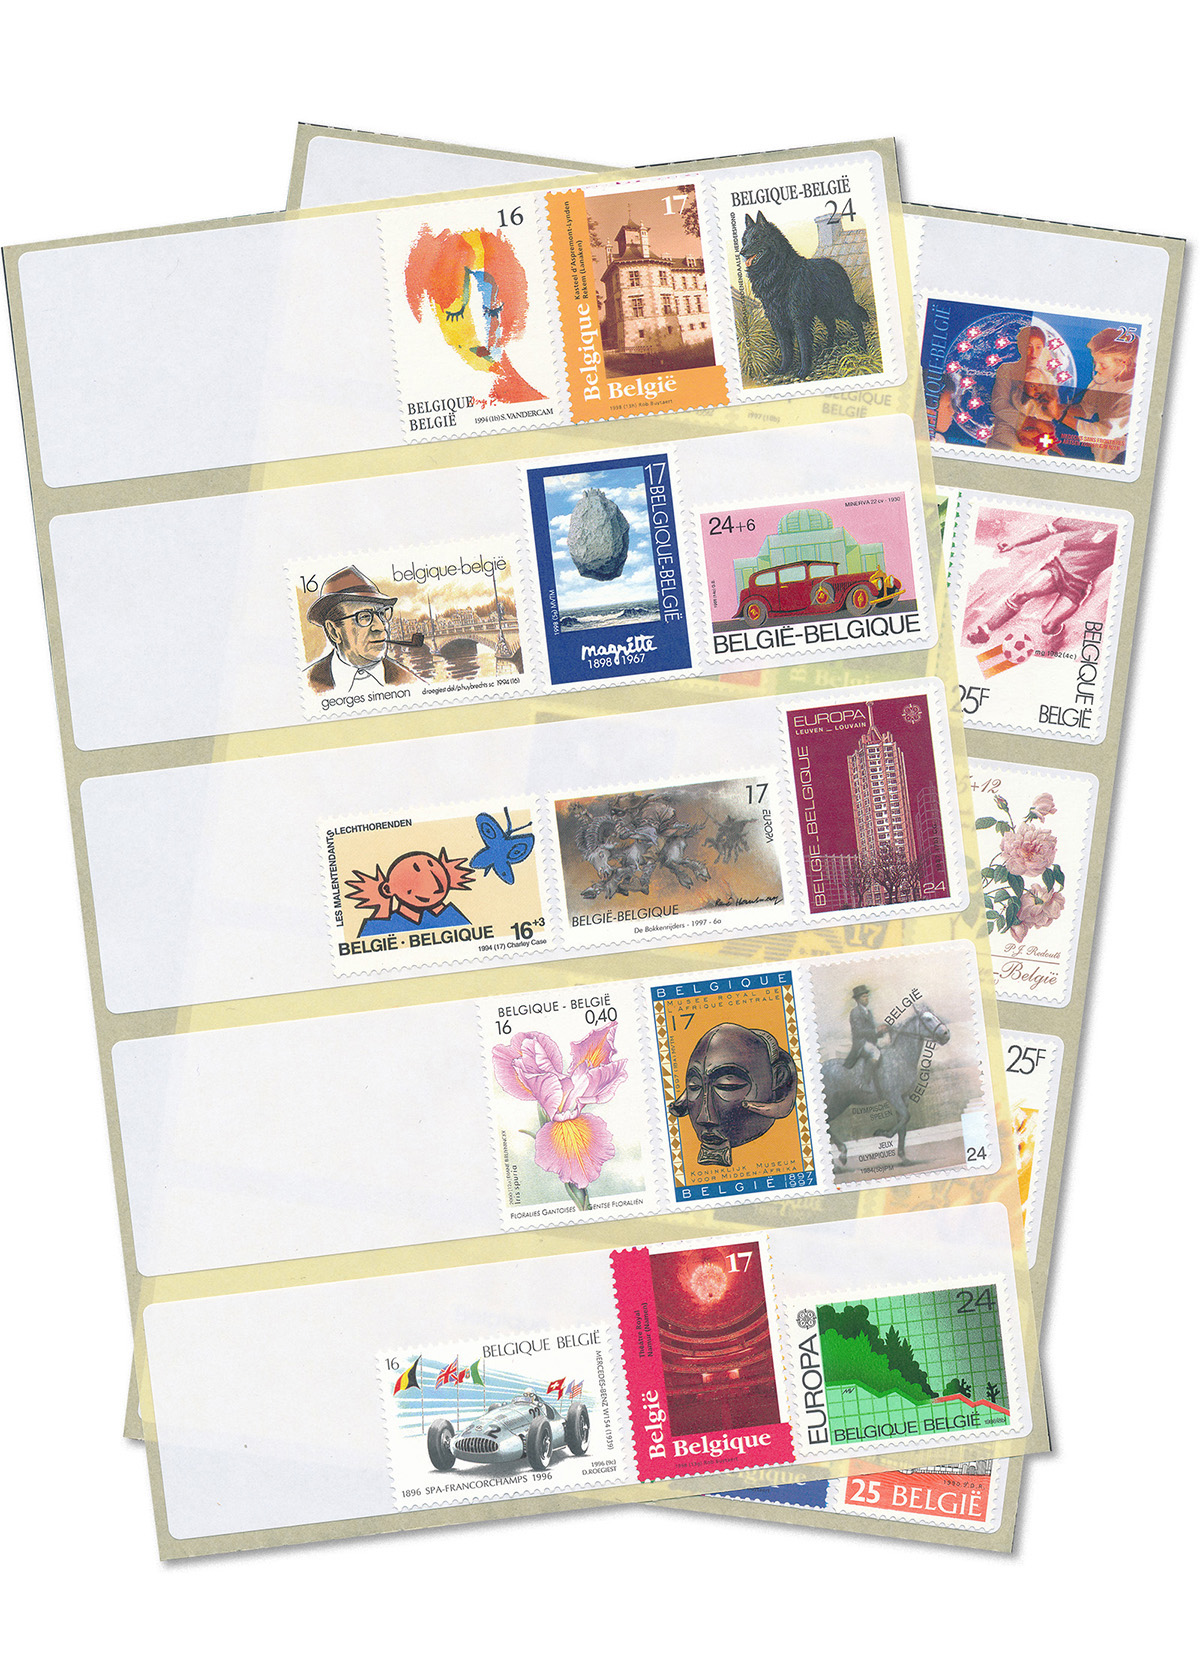 Postzegel-etiketten